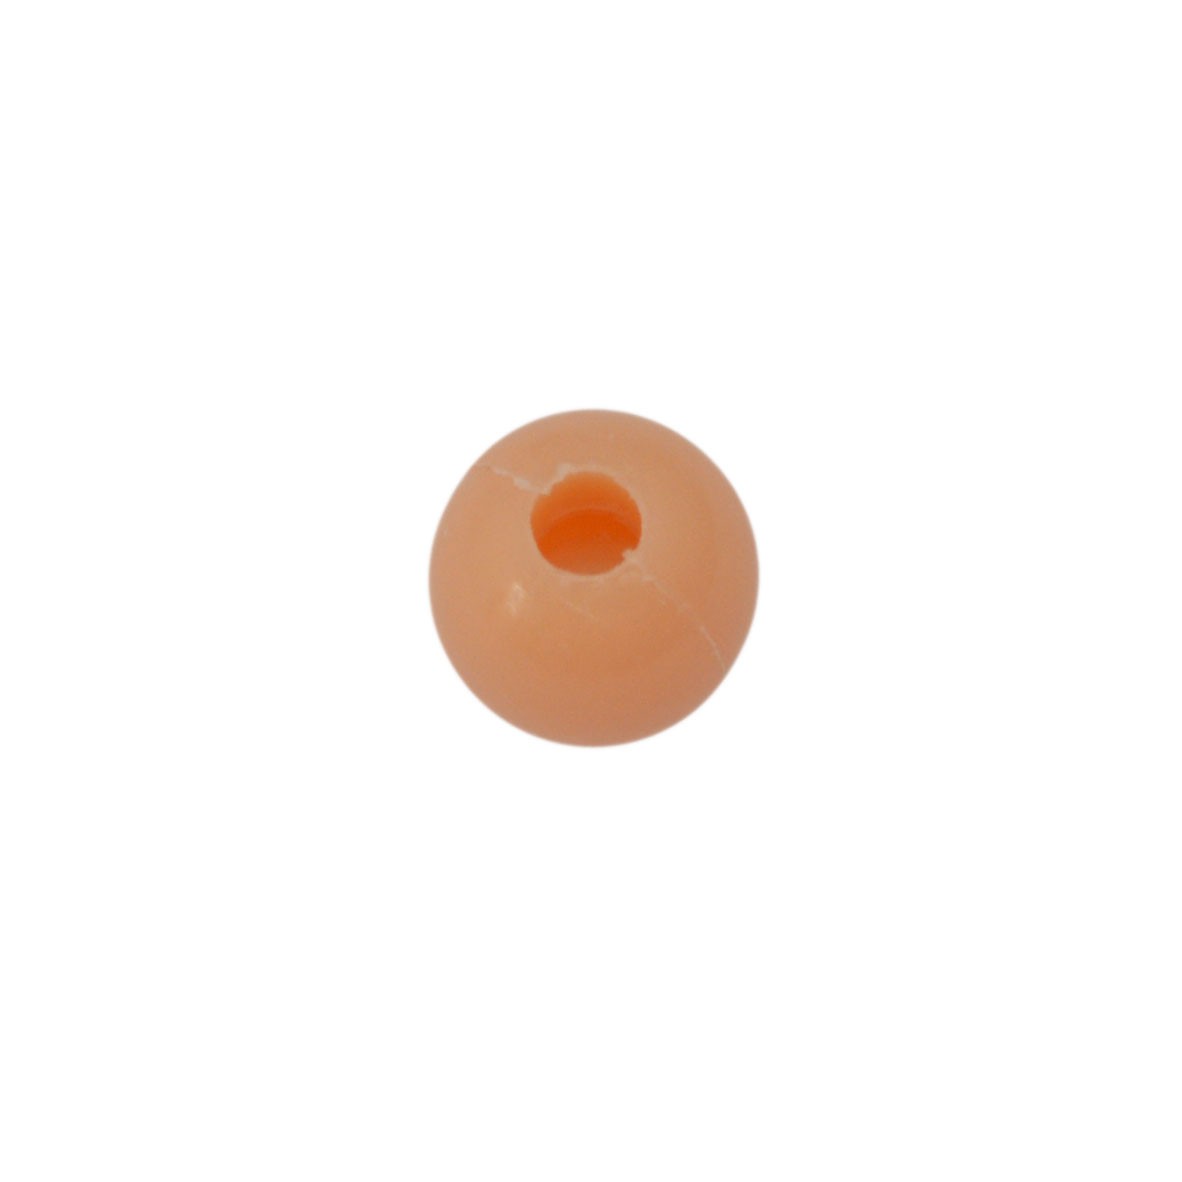 Oranje ronde acryl kraal